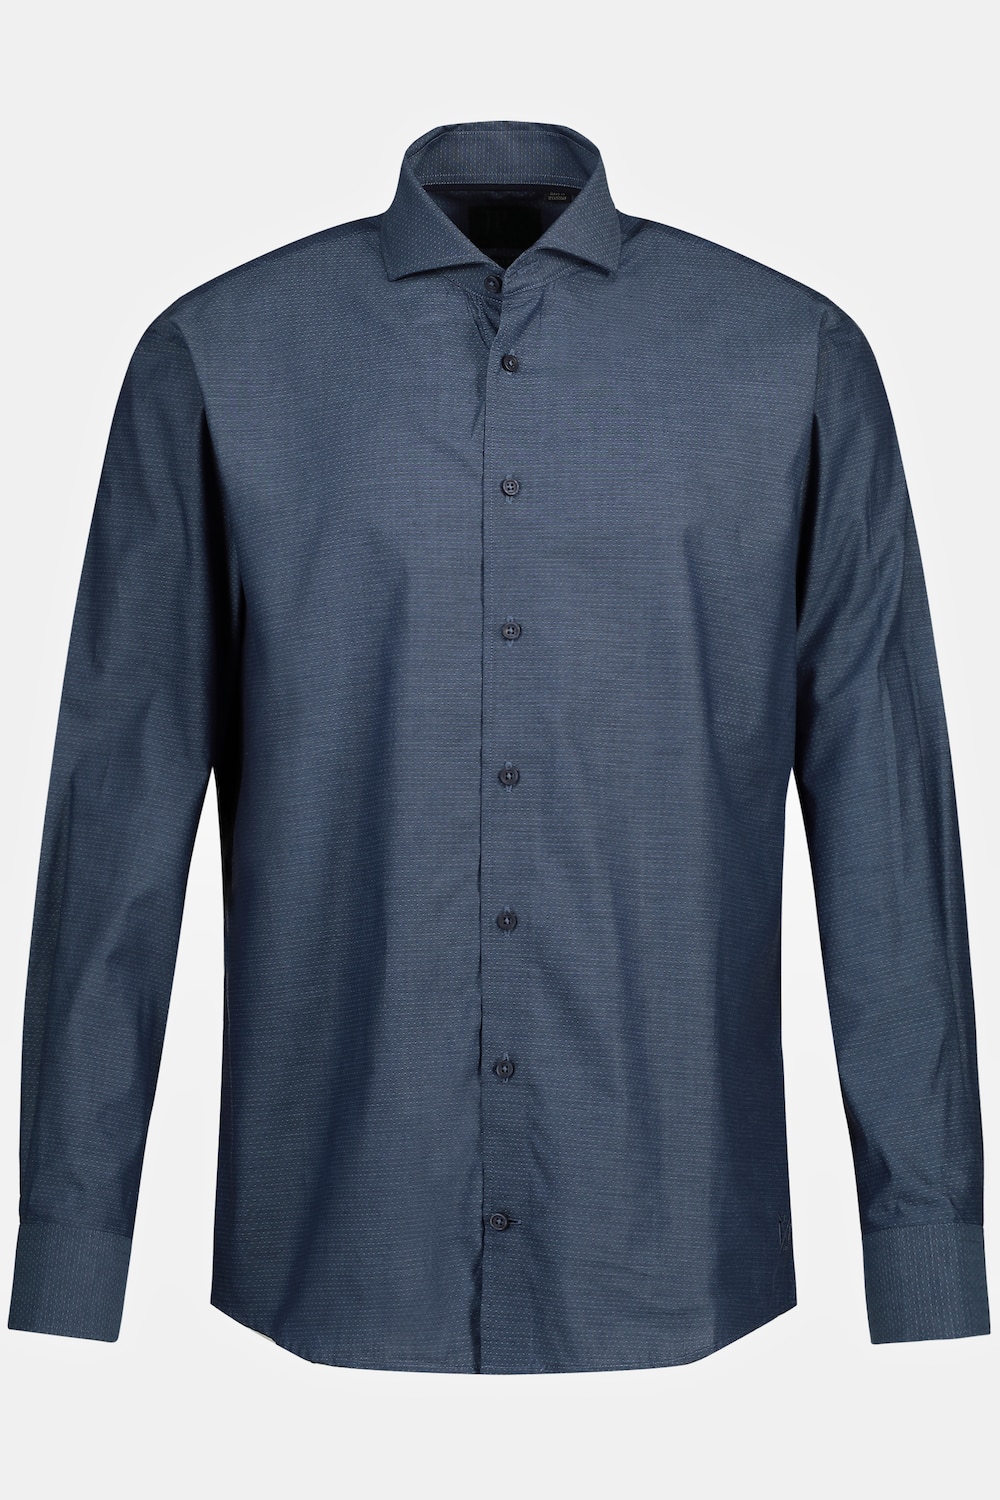 Grote Maten Zakelijk overhemd, Heren, blauw, Maat: 4XL, Katoen, JP1880